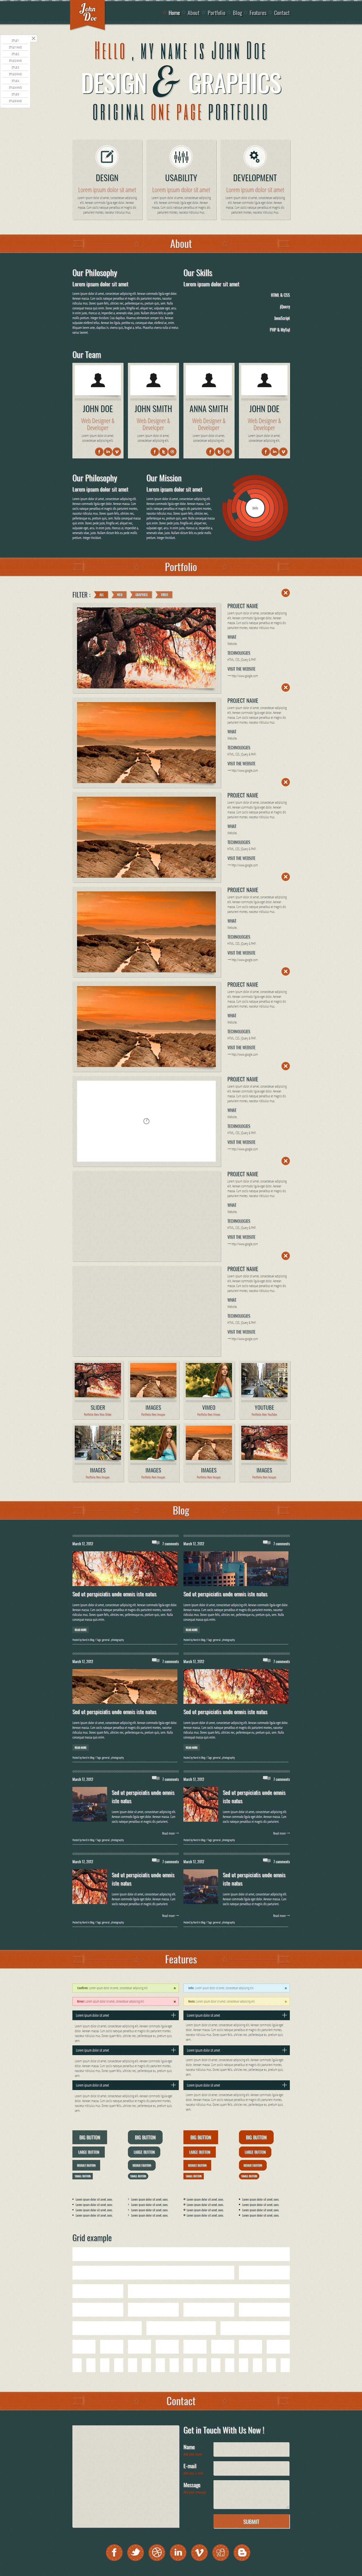 墨绿色扁平风格的创意设计网站模板下载